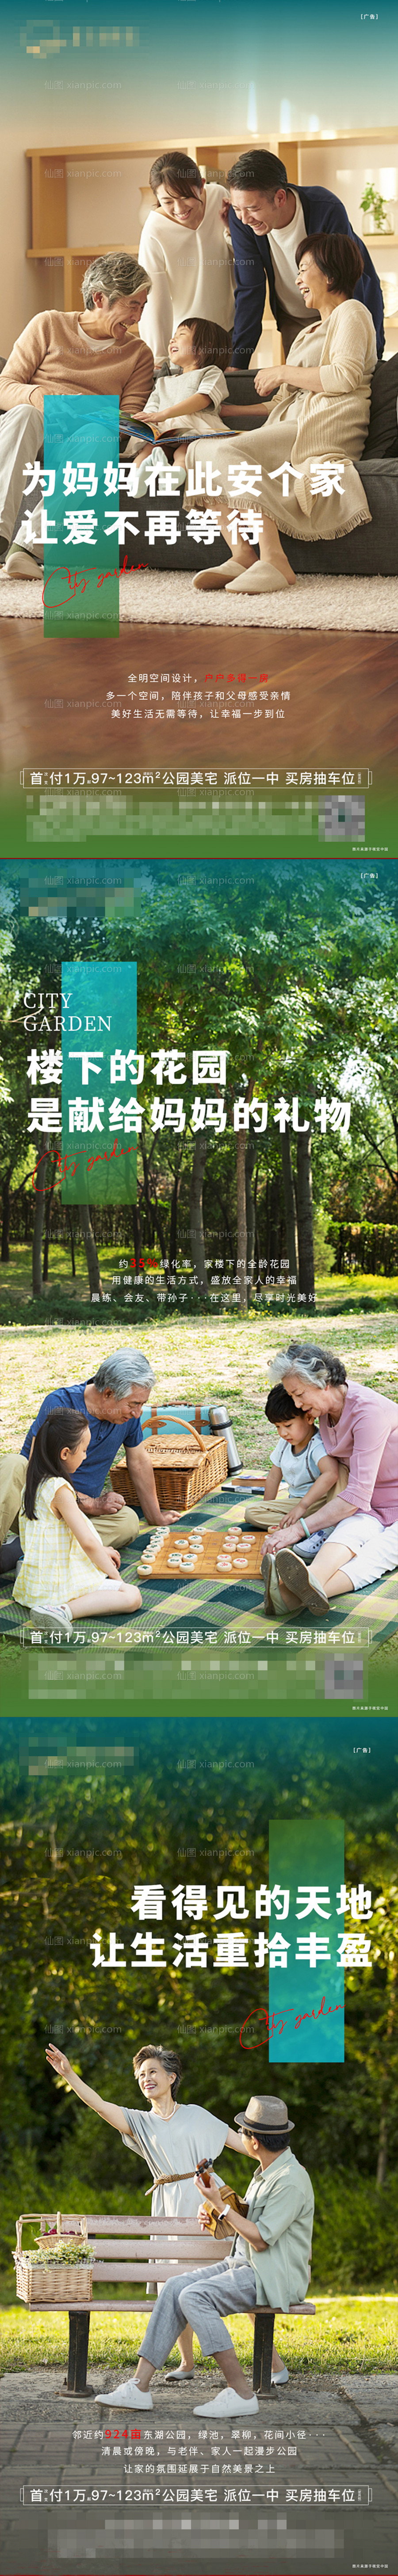 素材乐-母亲节园林价值点系列海报